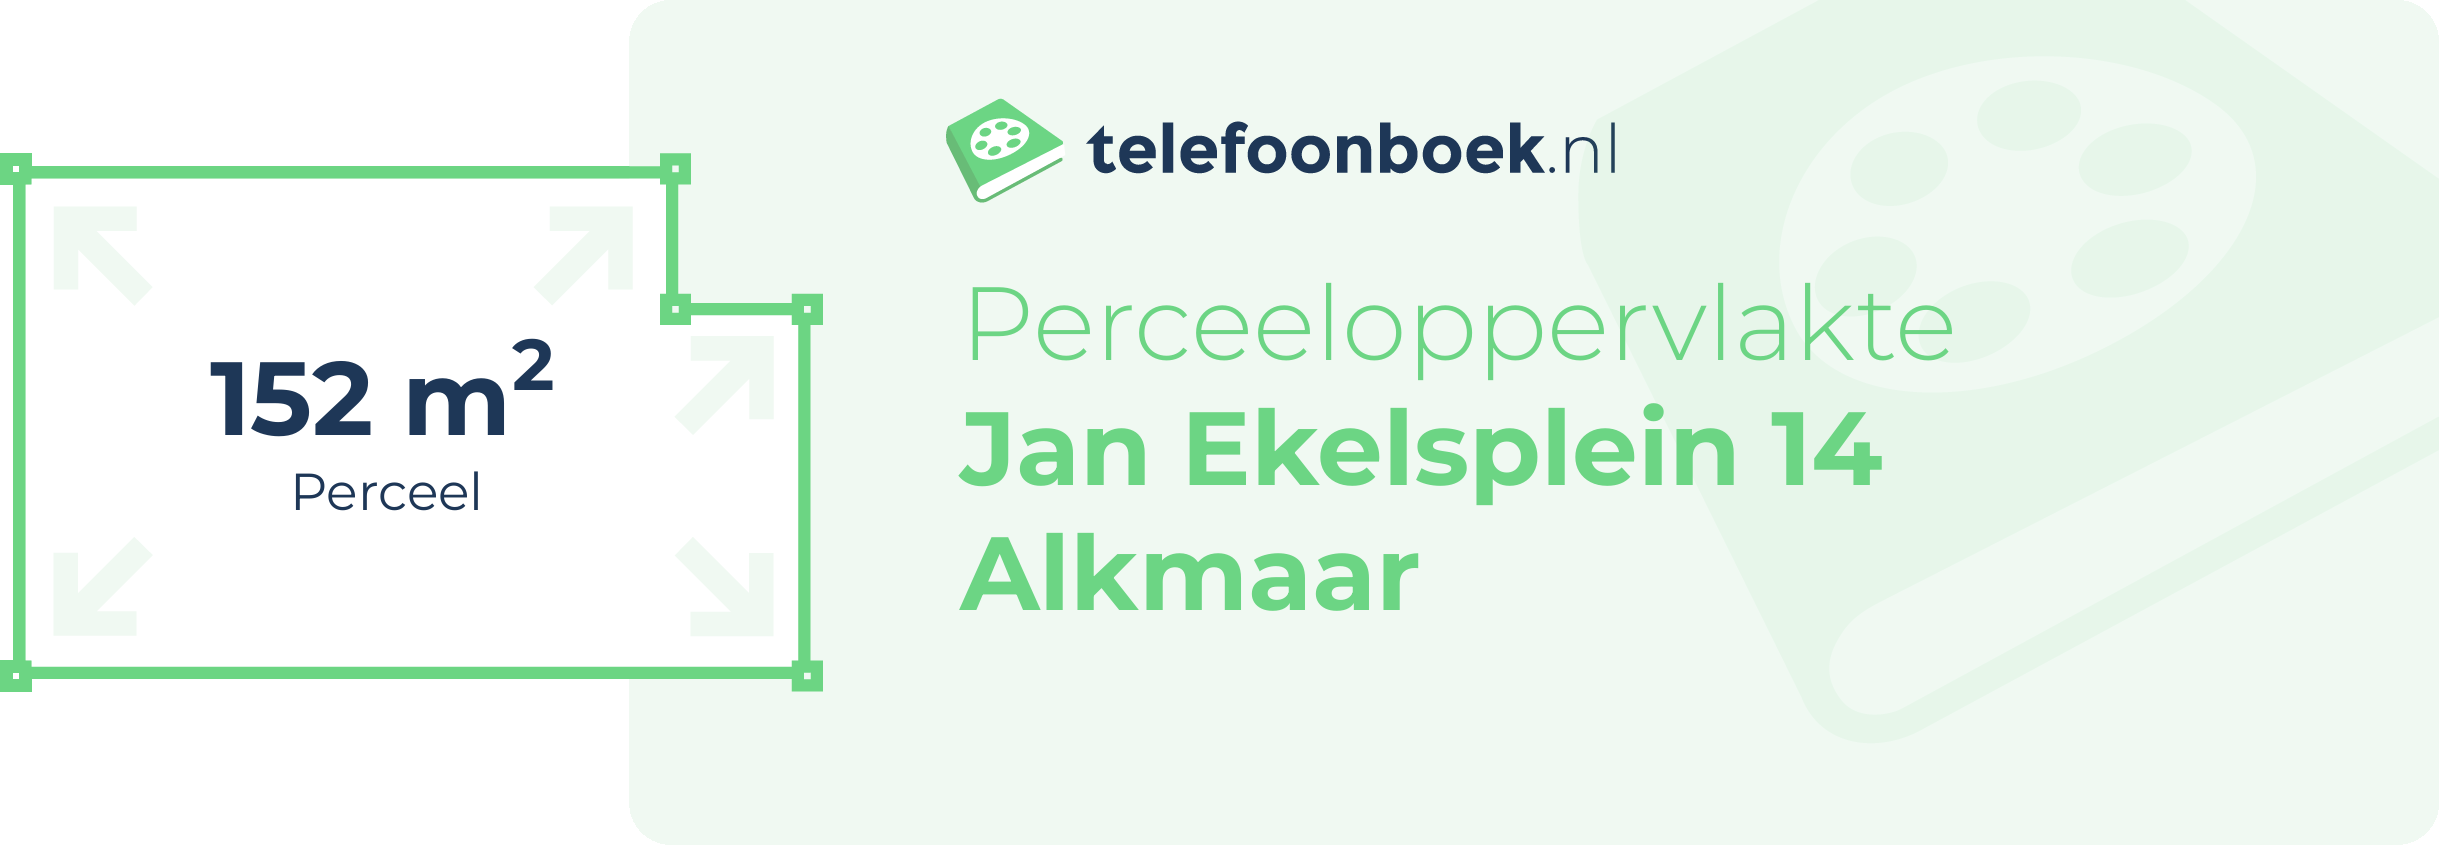 Perceeloppervlakte Jan Ekelsplein 14 Alkmaar